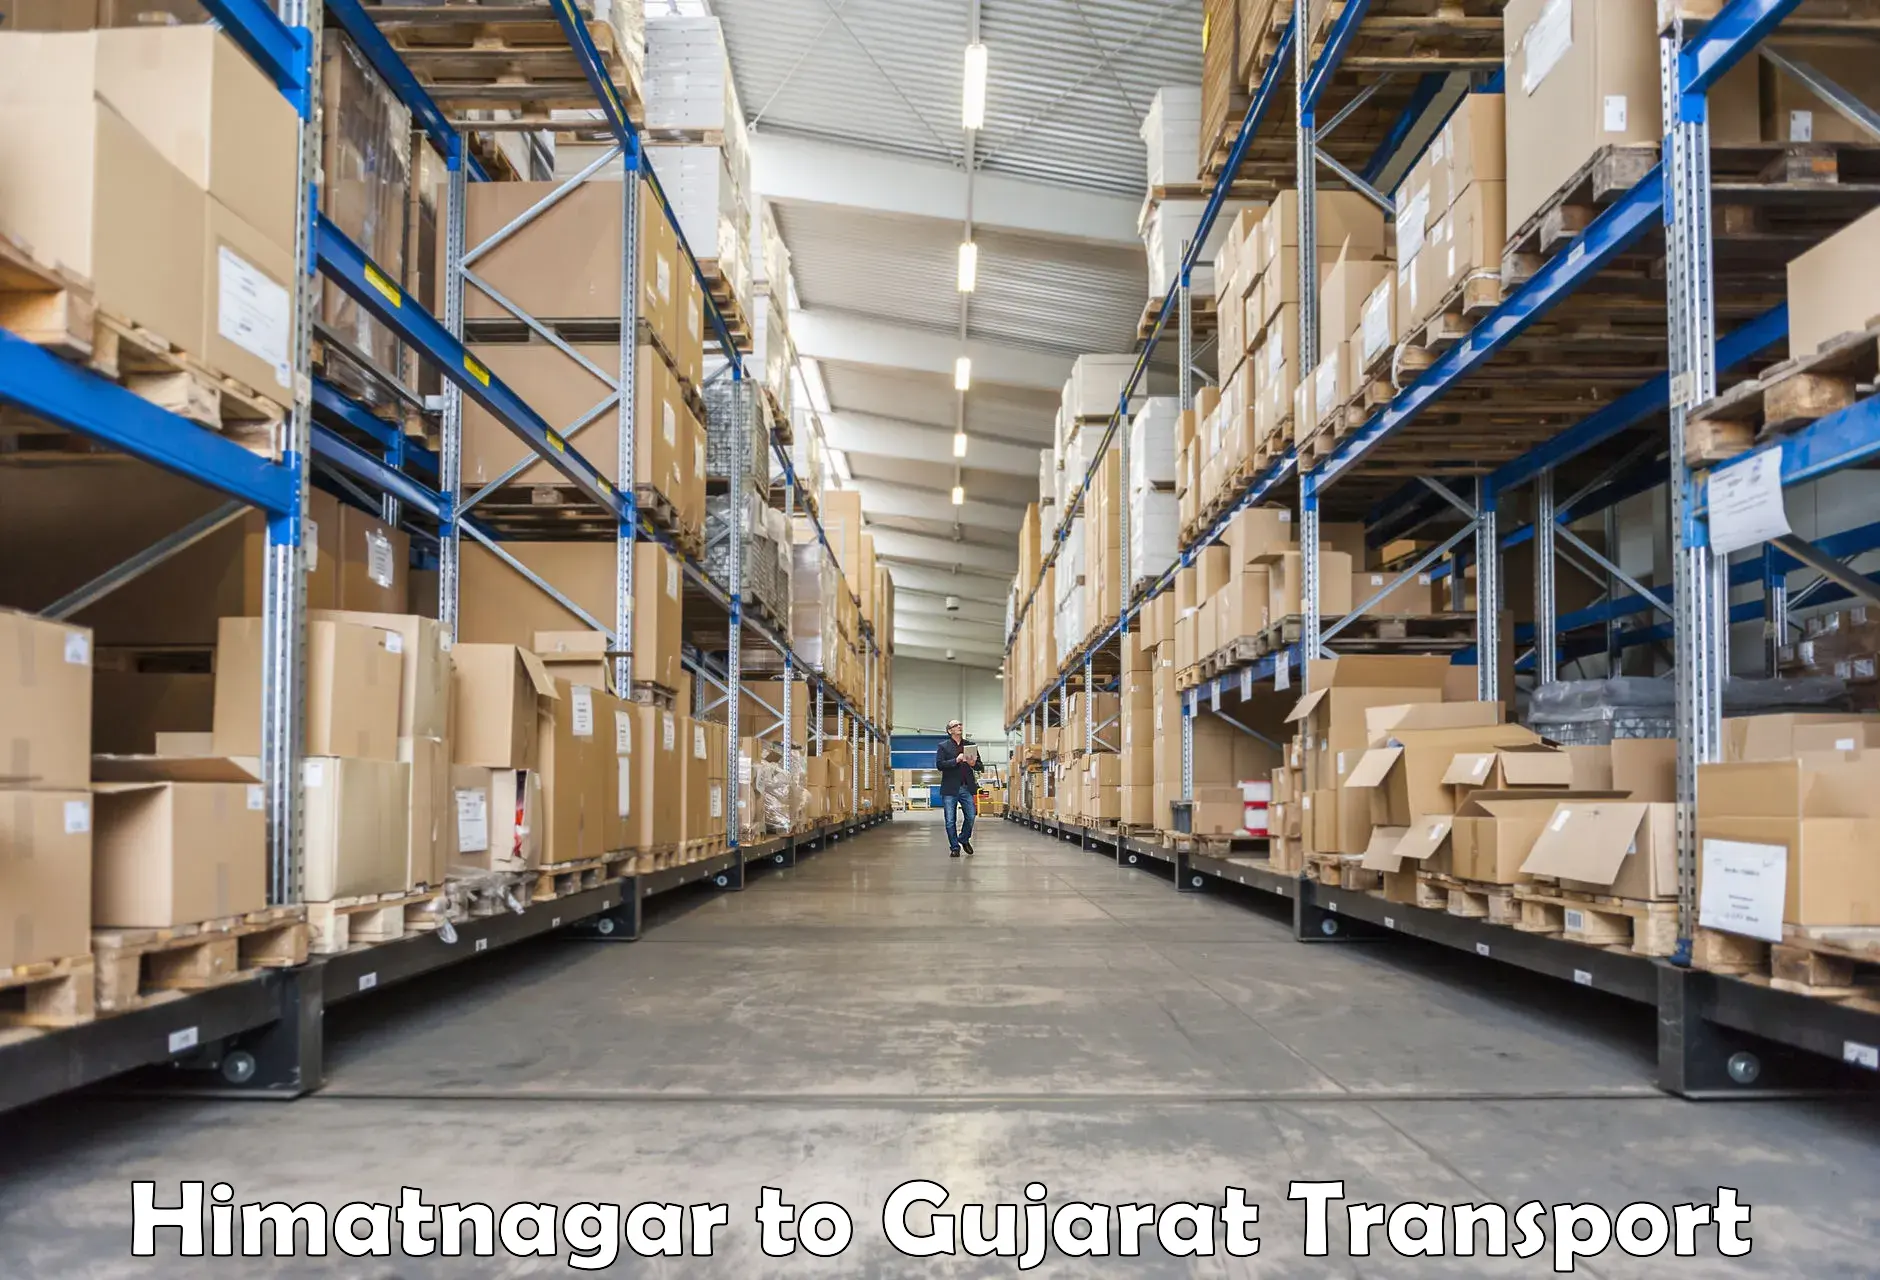 Road transport online services Himatnagar to Gandhinagar